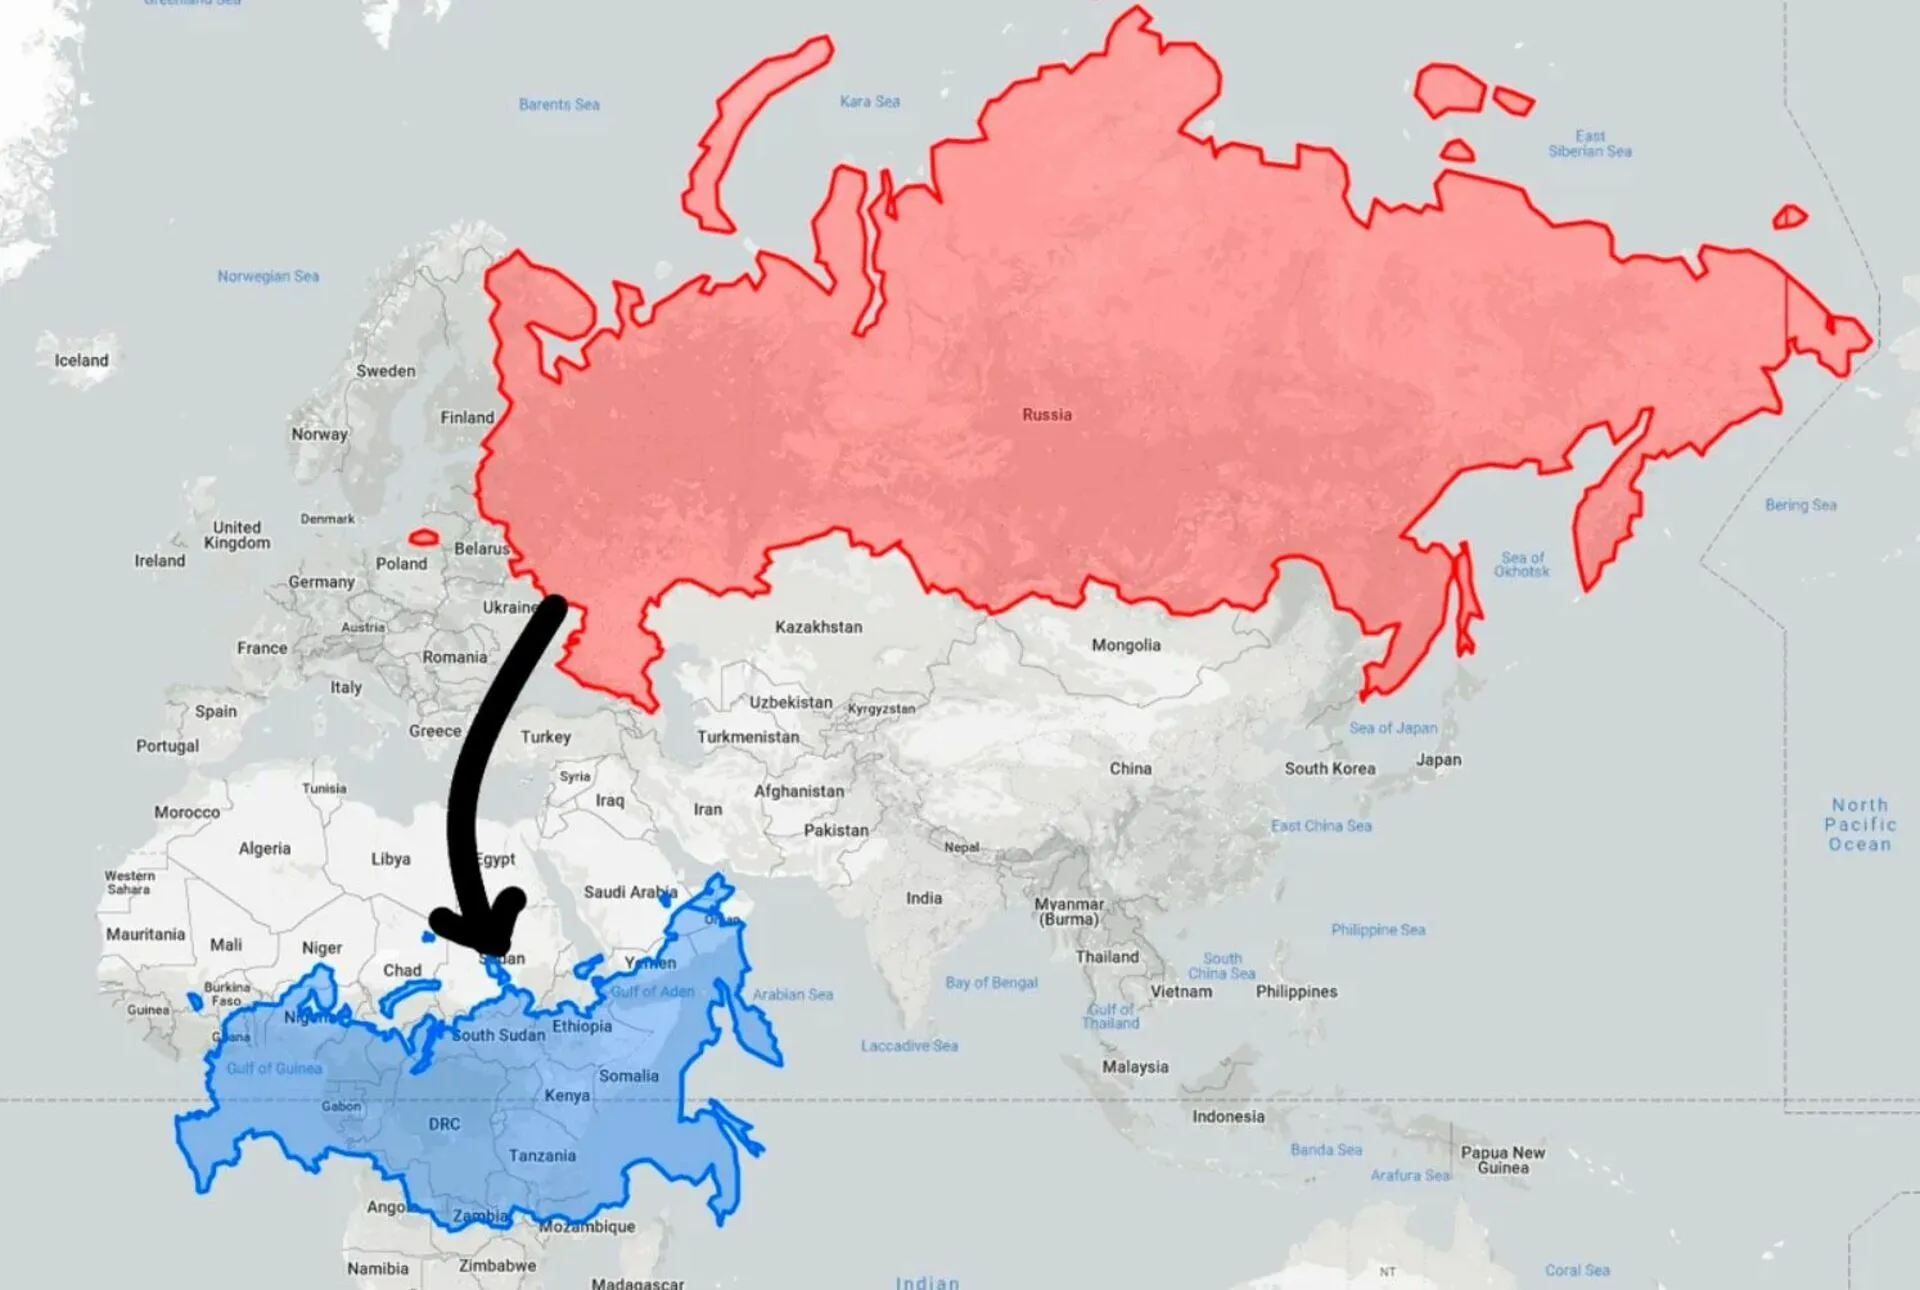 Сравнение украины. Украина по сравнению с Россией. Посия пр сравнению с Укра ино. Реальная карта России. Украина по сравнению с Россией на карте.